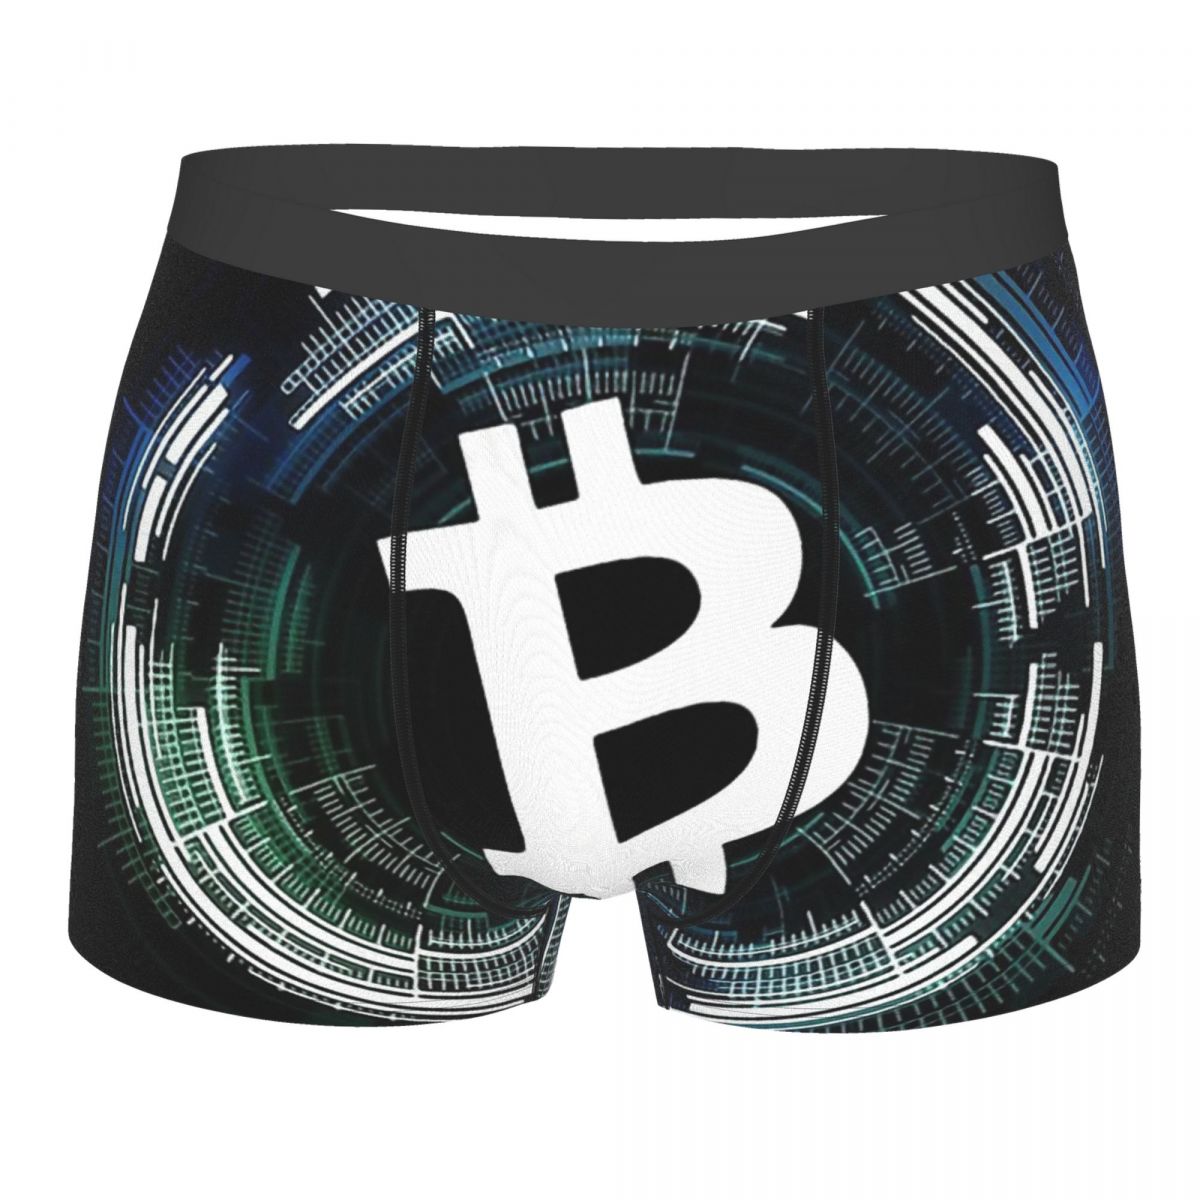 Bitcoin Men's Underwear